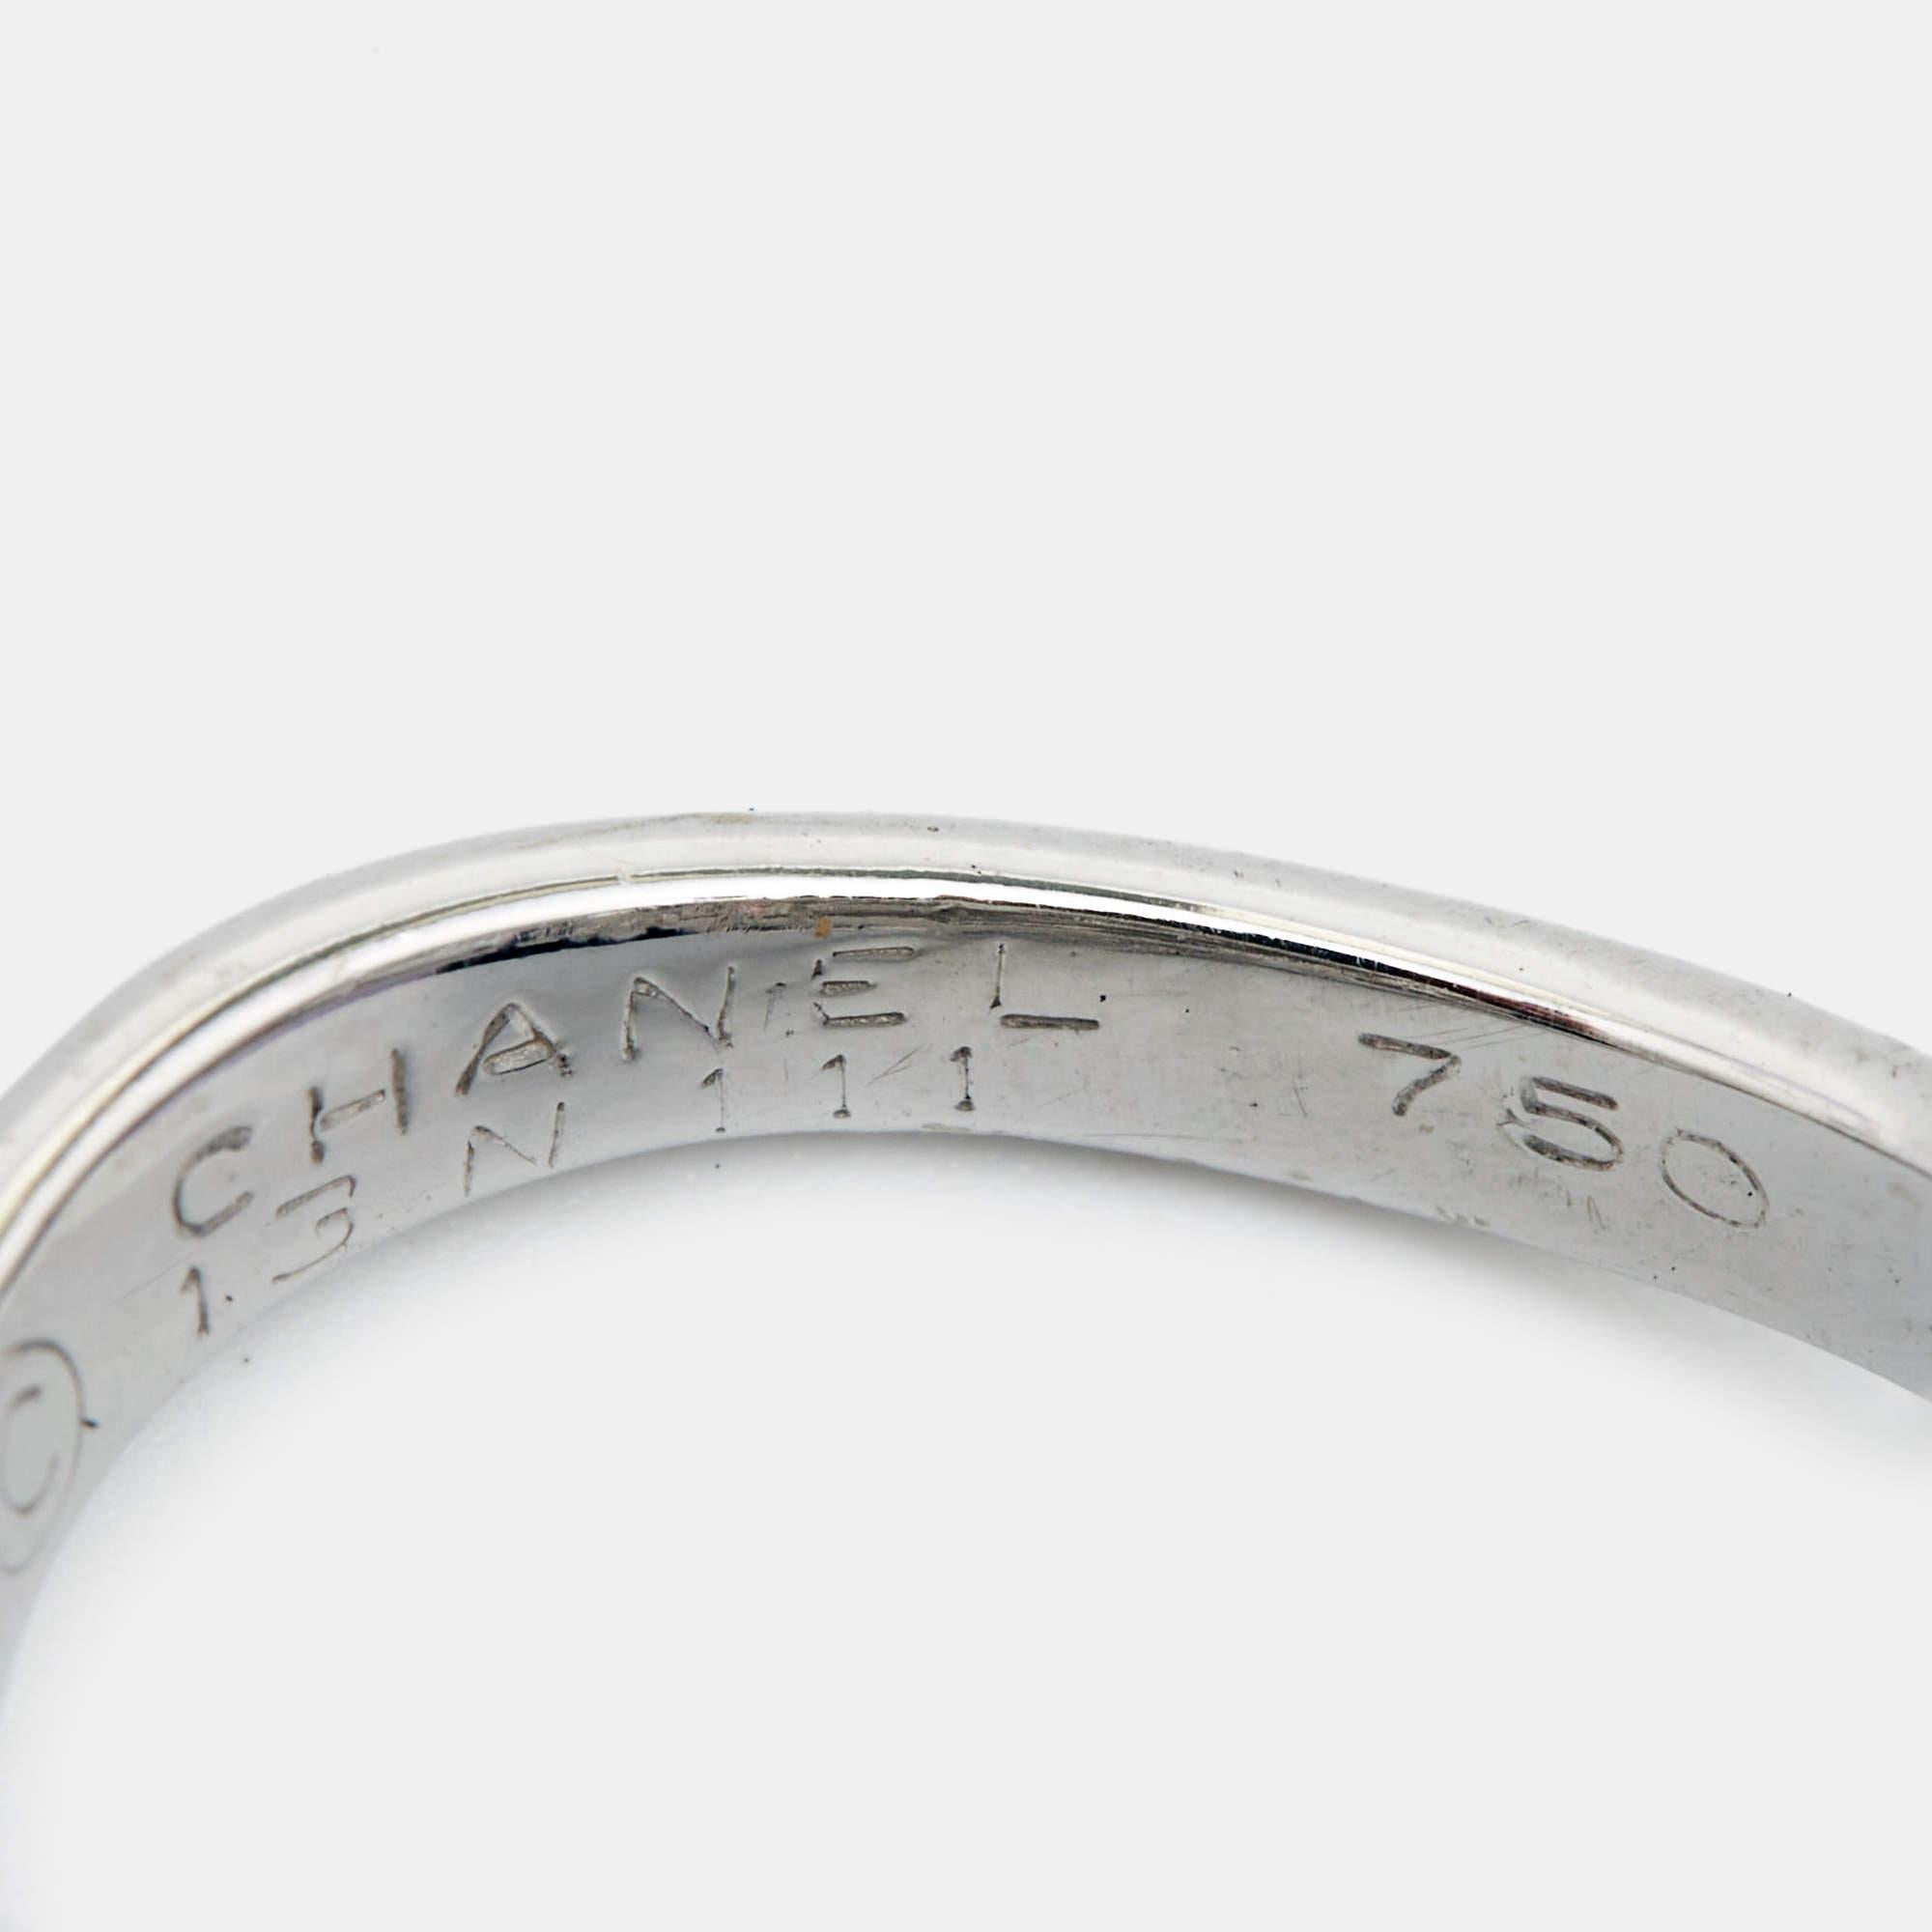 Oval Cut Chanel Pétales de Camélia  Oval Solitaire Diamond Black Diamonds 18k Ring Size 5